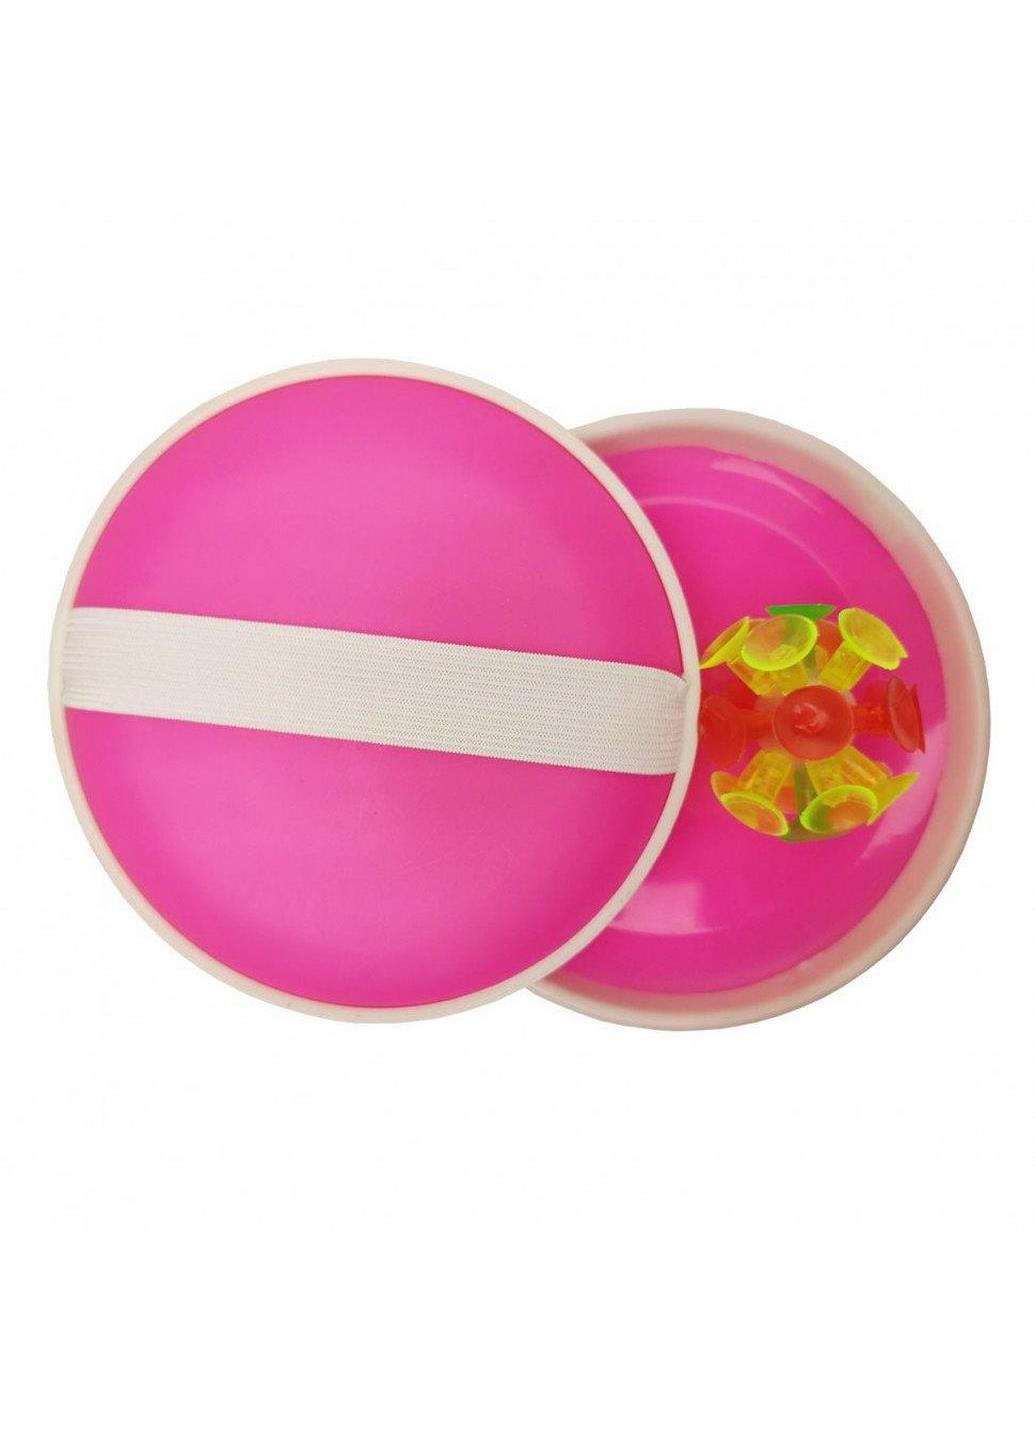 Детская игра "Ловушка" M 2872 мяч на присосках 15 см (Розовый) Metr+ (238104989)